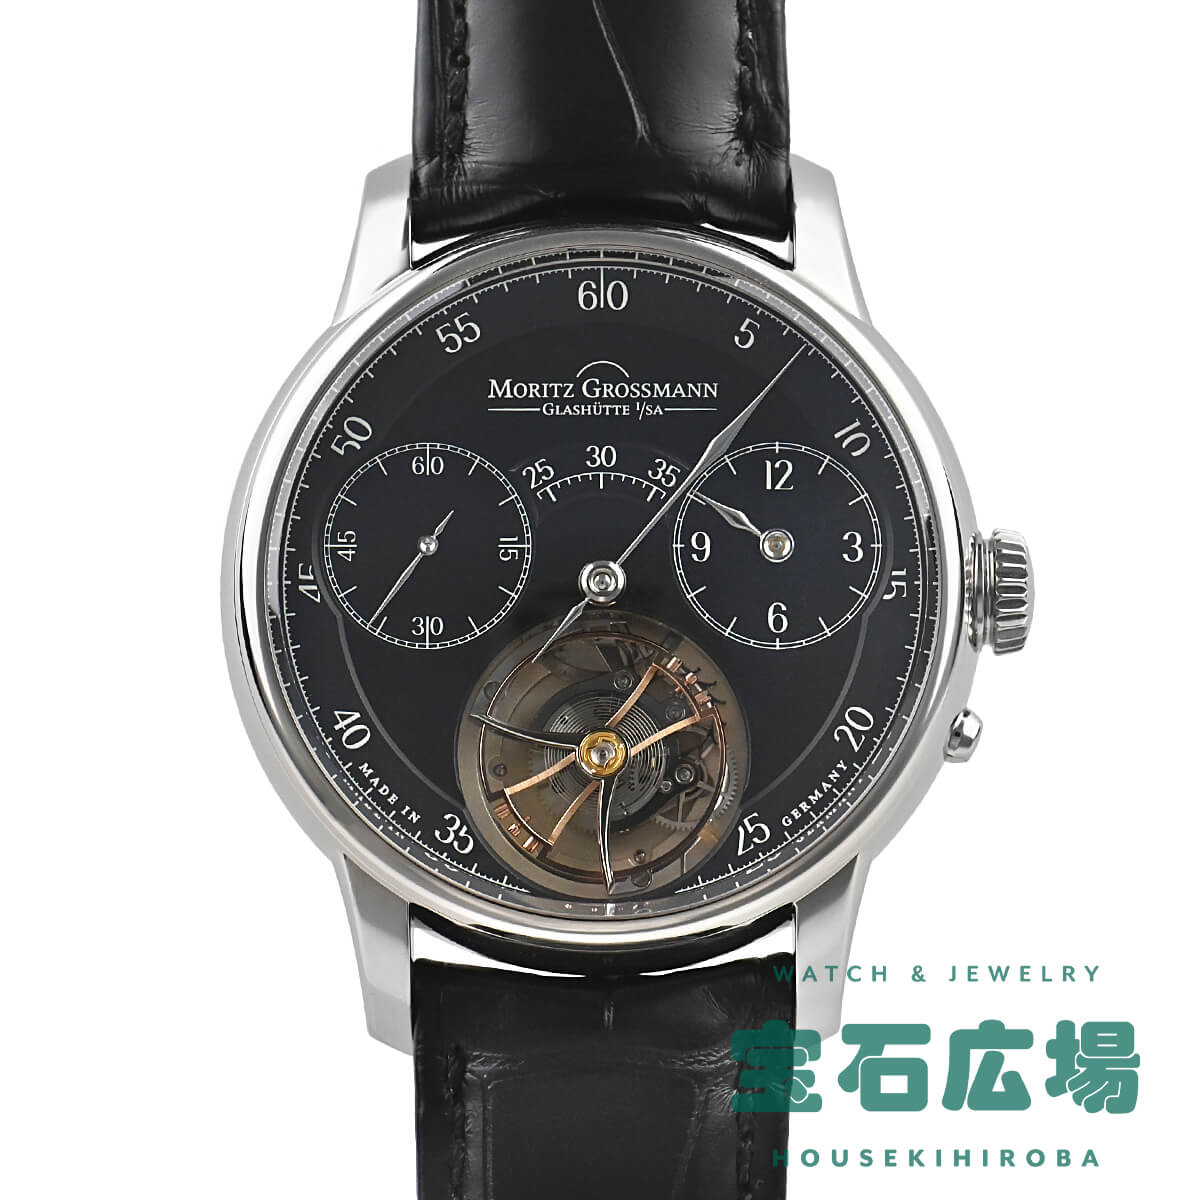 モリッツ・グロスマン MORITZ GROSSMANN ベヌー・トゥールビヨン 限定生産10本 MG-000779 中古 未使用品 メンズ 腕時計